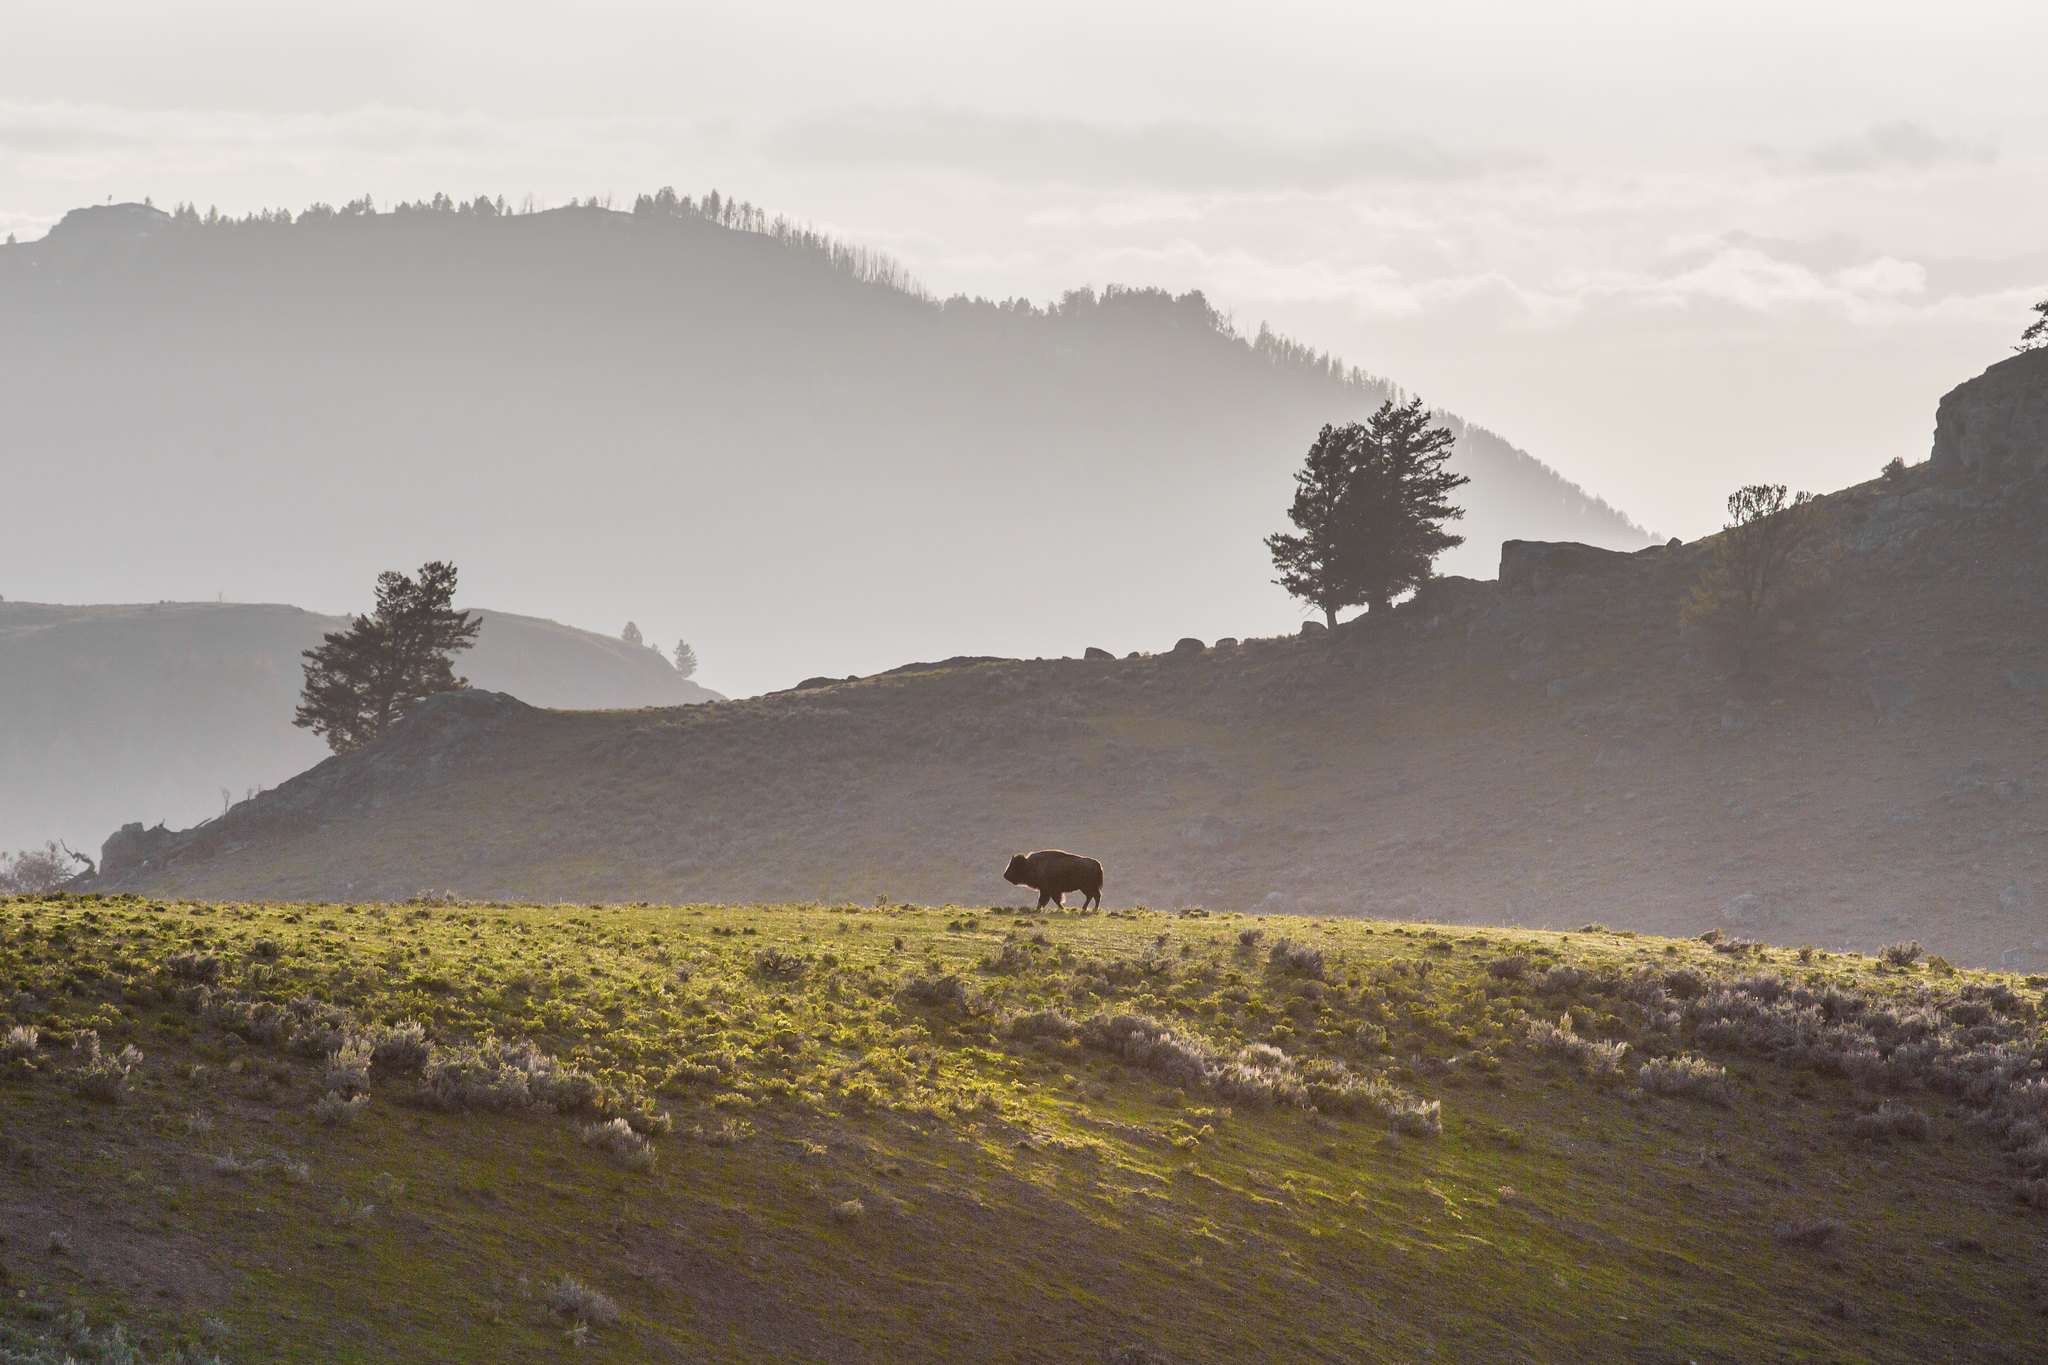 A lone bison walking on a ridge.